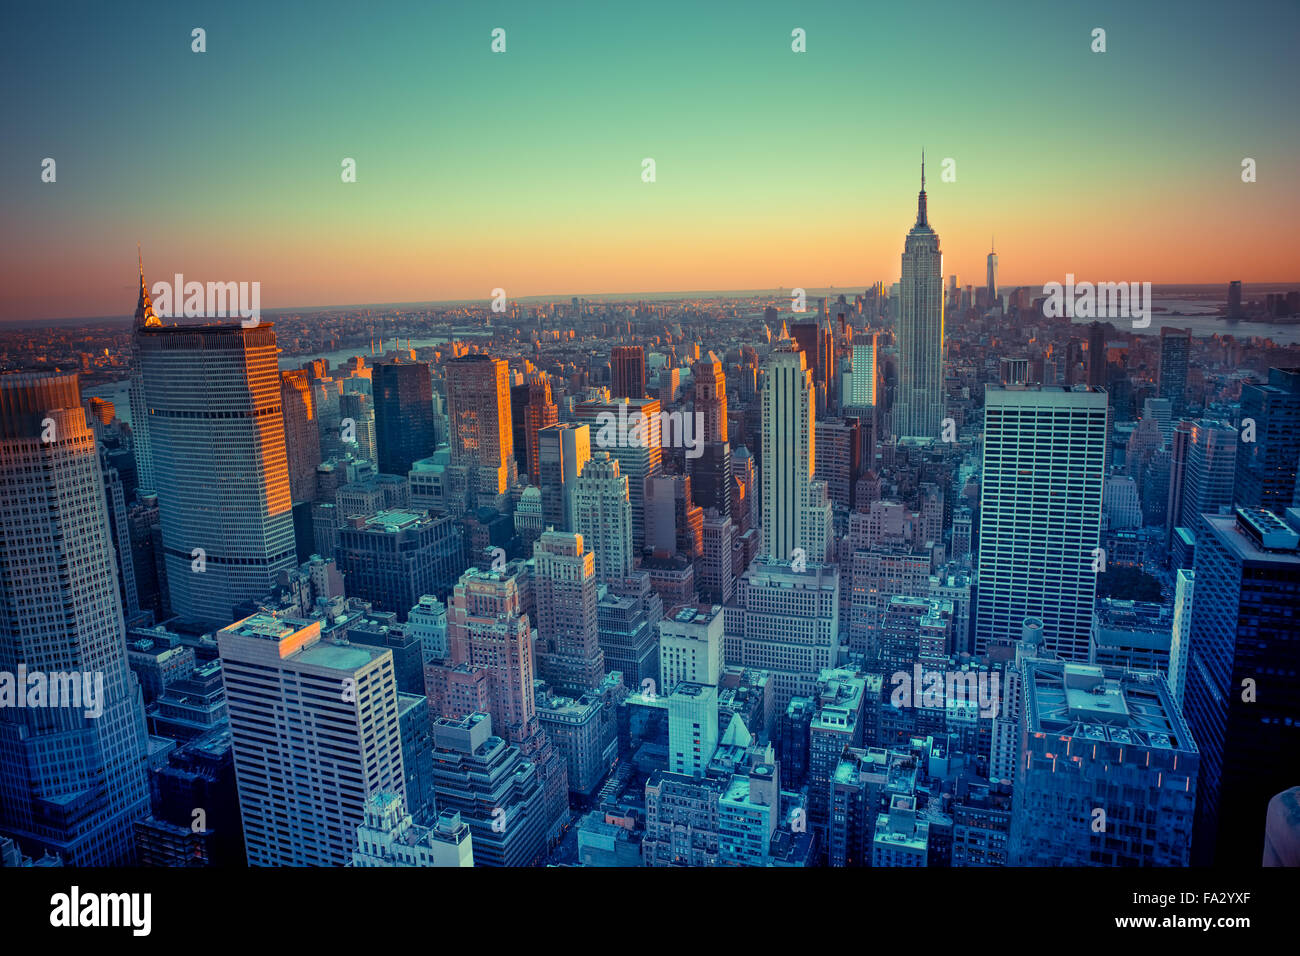 Vue d'ensemble des immeubles de New York au coucher du soleil Banque D'Images